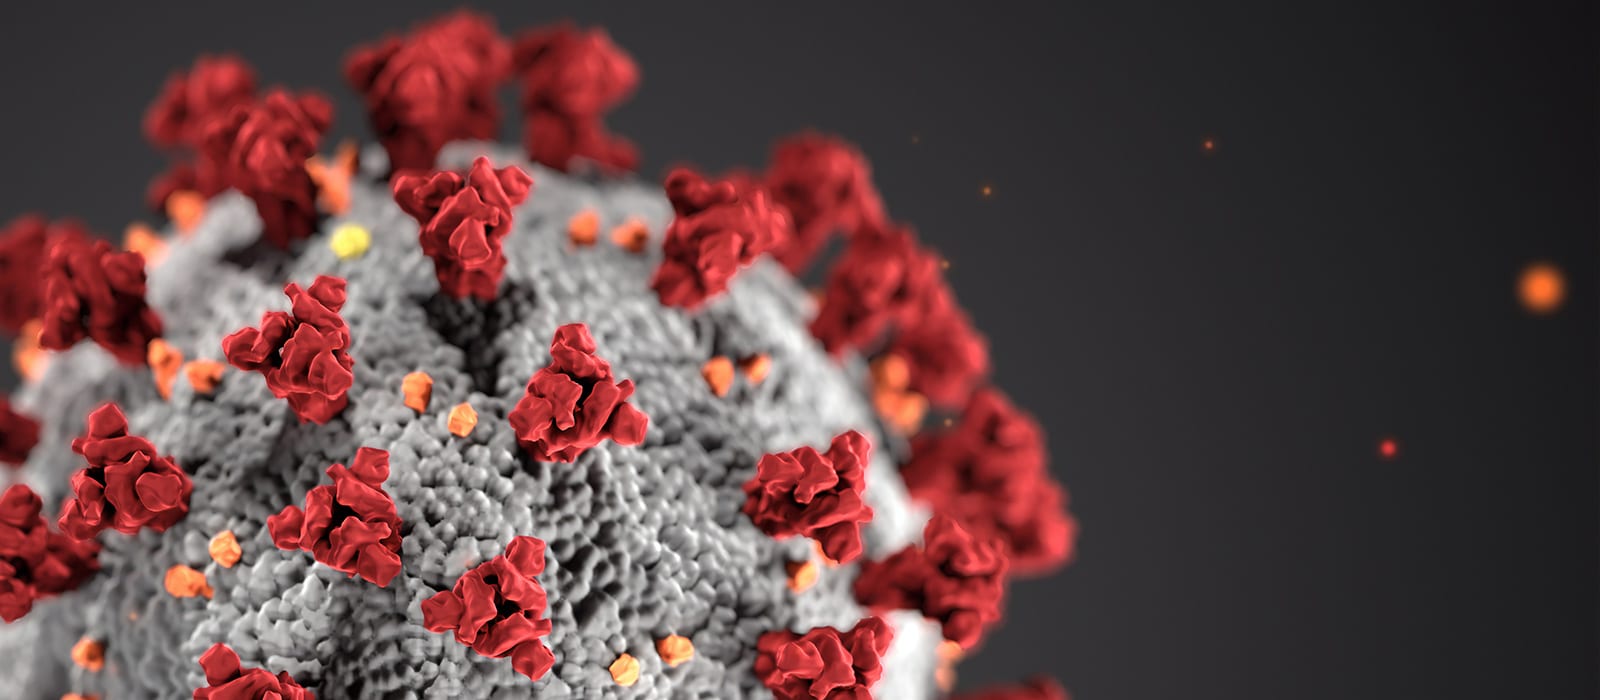 Closeup image of a Virus